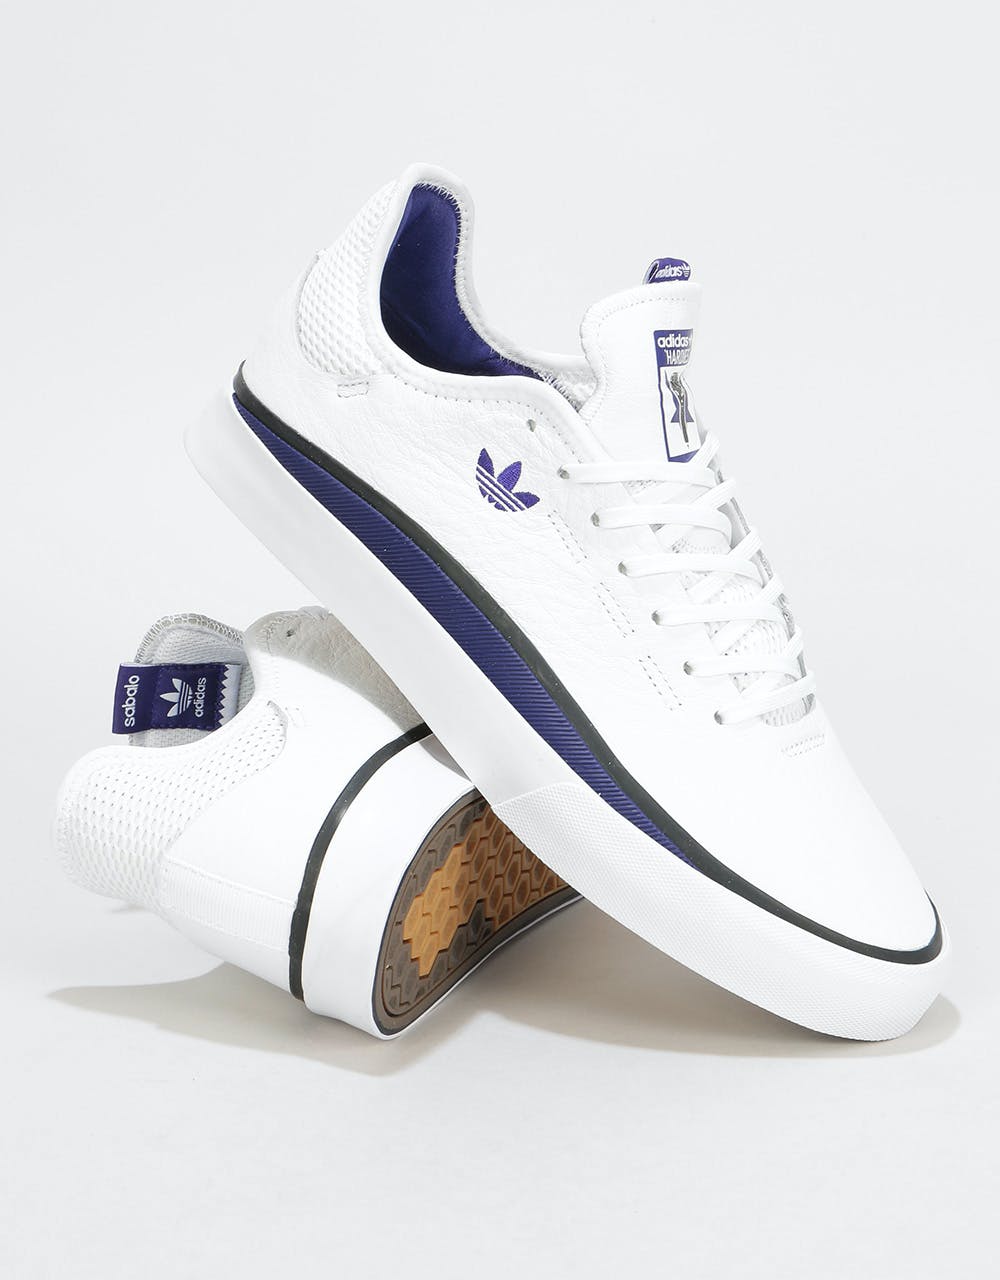 Adidas x Hardies Sabalo Skate Shoes - White/Customized/Core Black